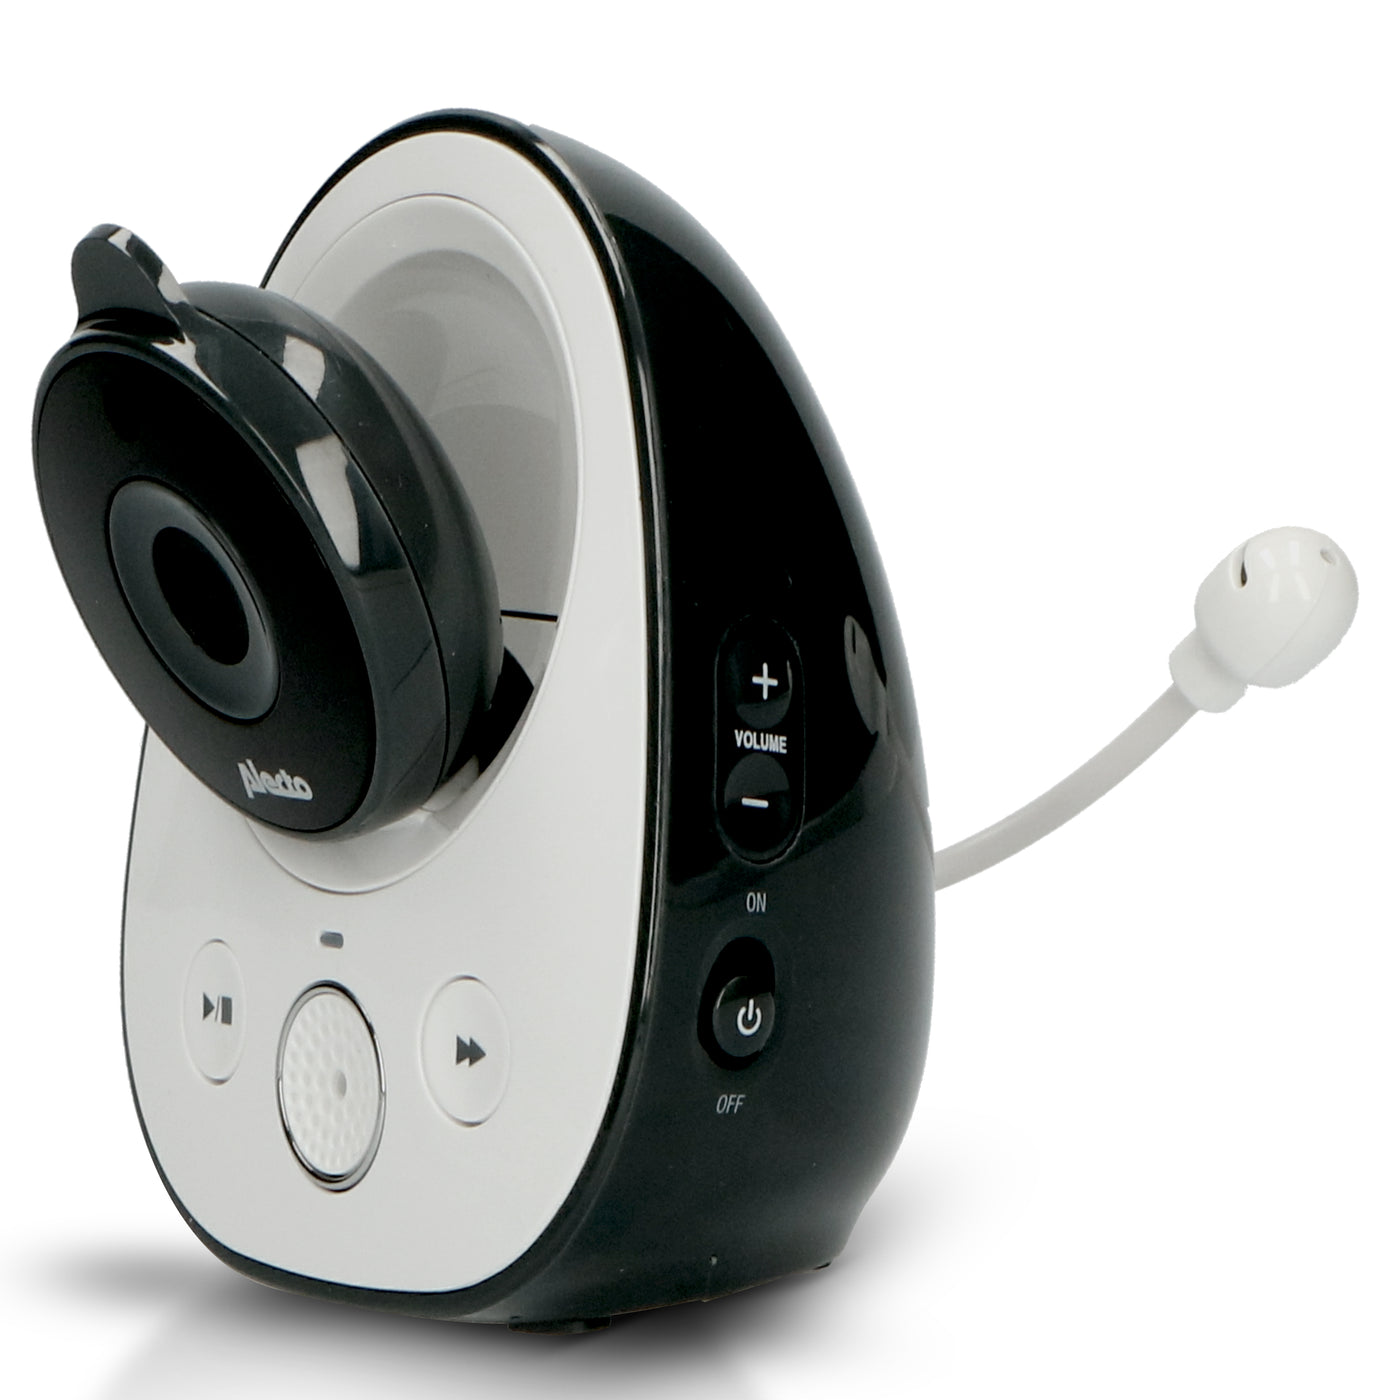 Alecto DVM-150 - Zusätzliche Kamera für DVM-150, Weiß/Anthrazit